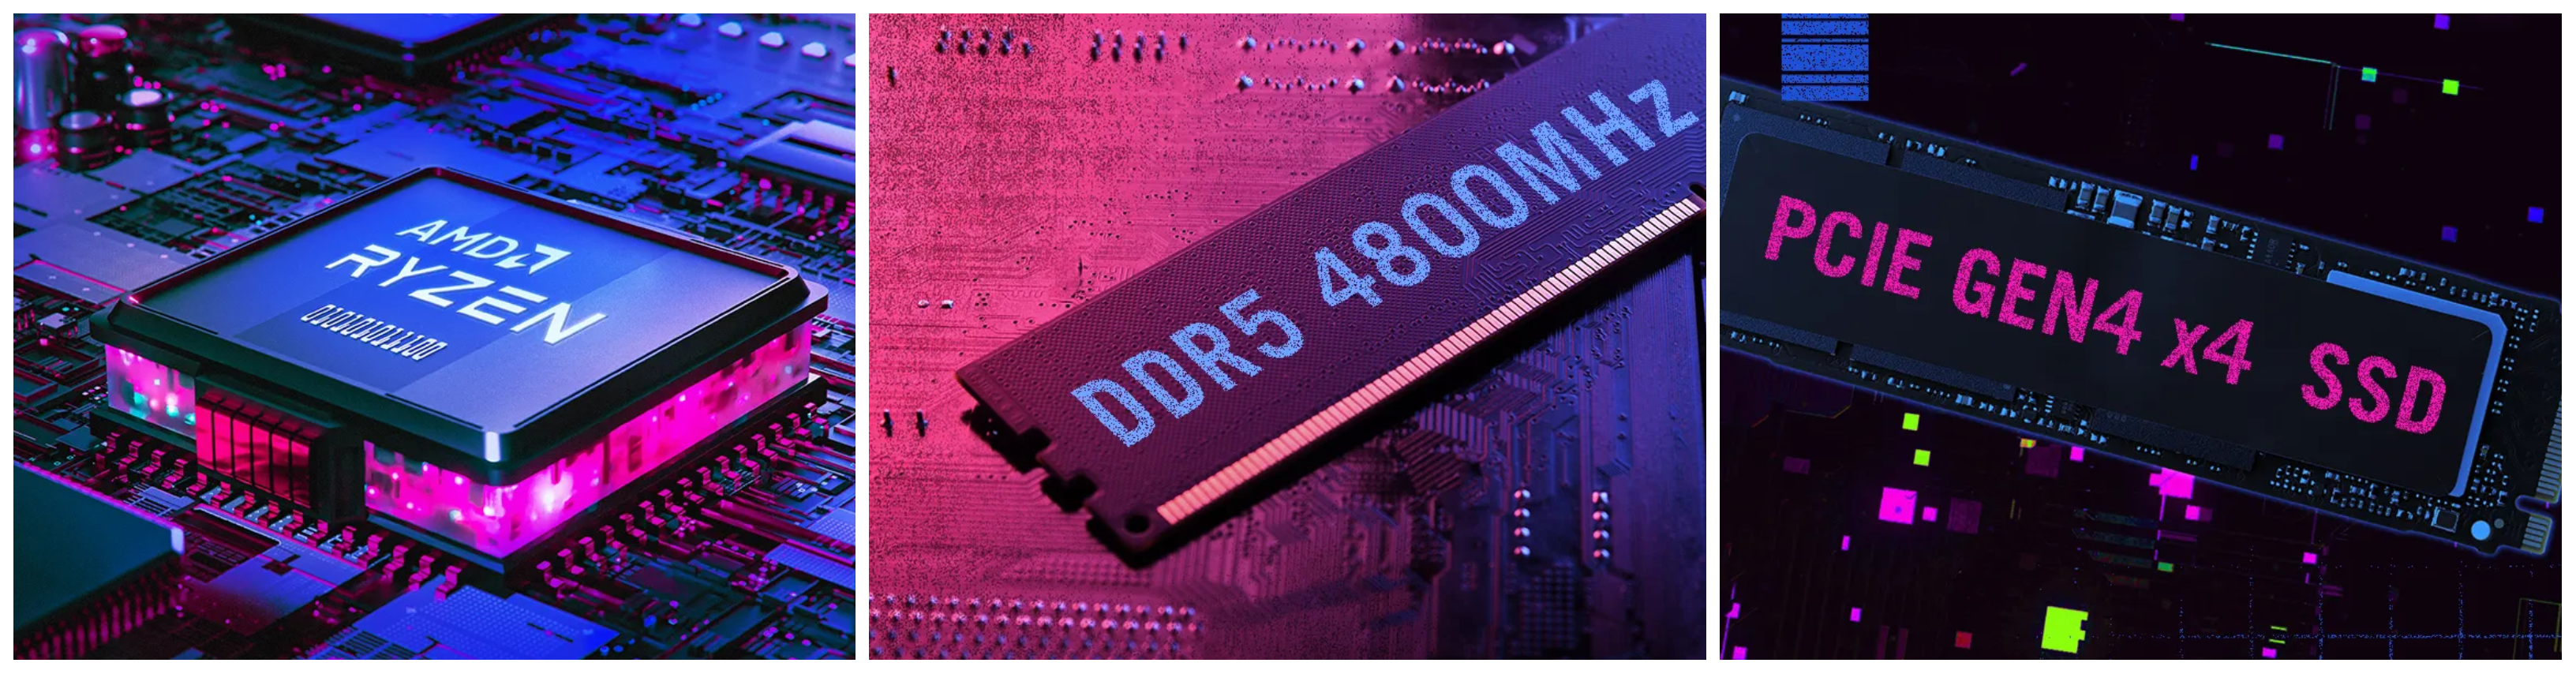 O plynulý chod notebooku ROG Strix G15 se stará 8jádrový procesor AMD Ryzen 7 4800H s maximálním taktem až 4,2 GHz v TB režimu, kterému sekunduje 16GB paměť RAM DDR4-3200 a super-rychlý SSD disk o kapacitě 512 GB.